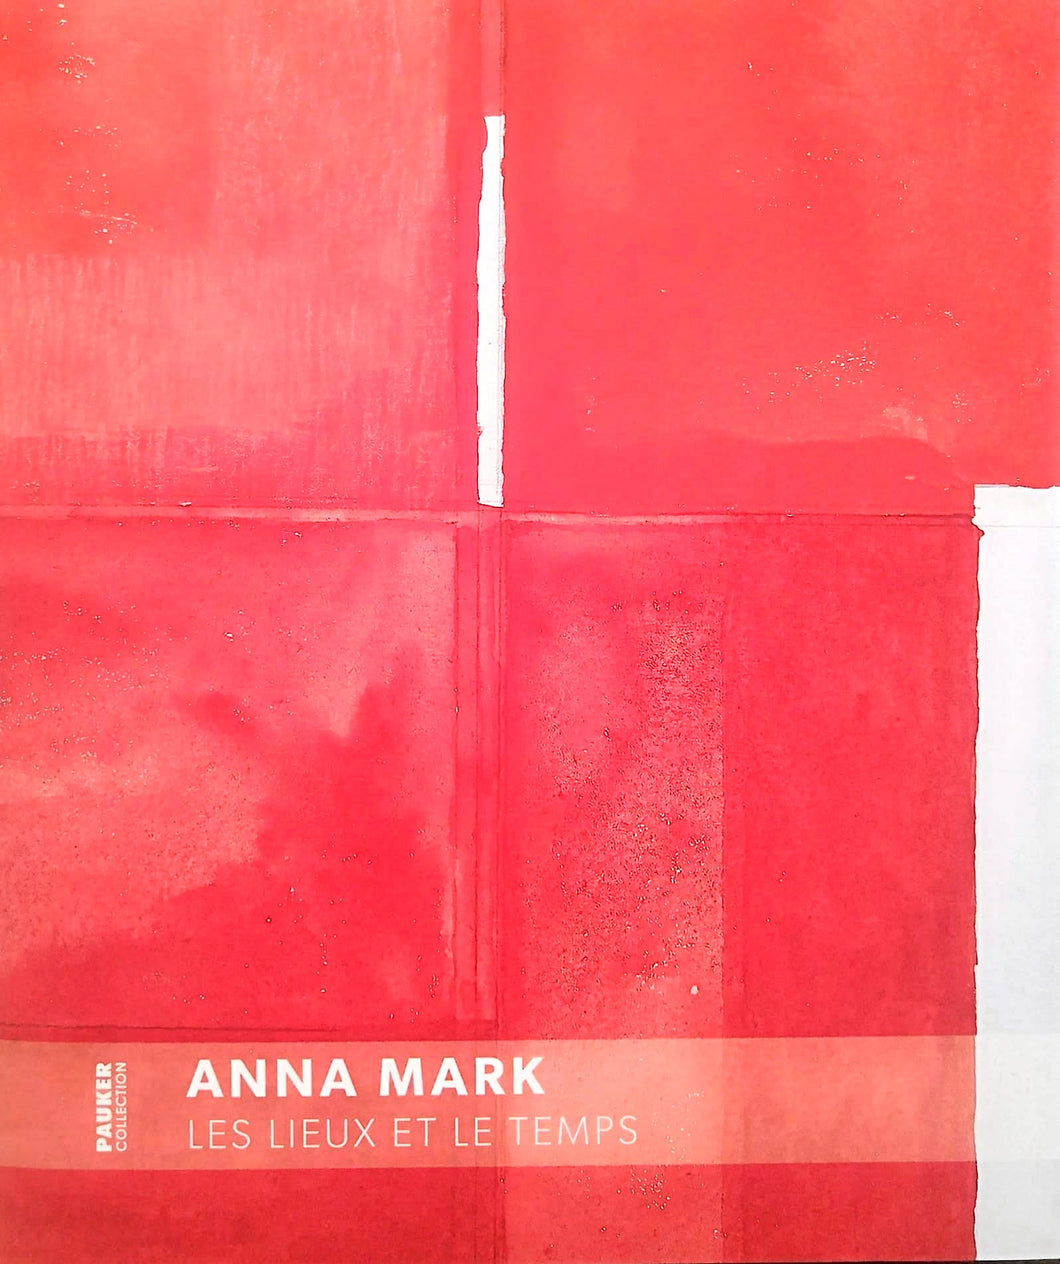 Anna Mark, Les lieux et le temps, Jean-Pascal Léger, Pauker Collection, 2021